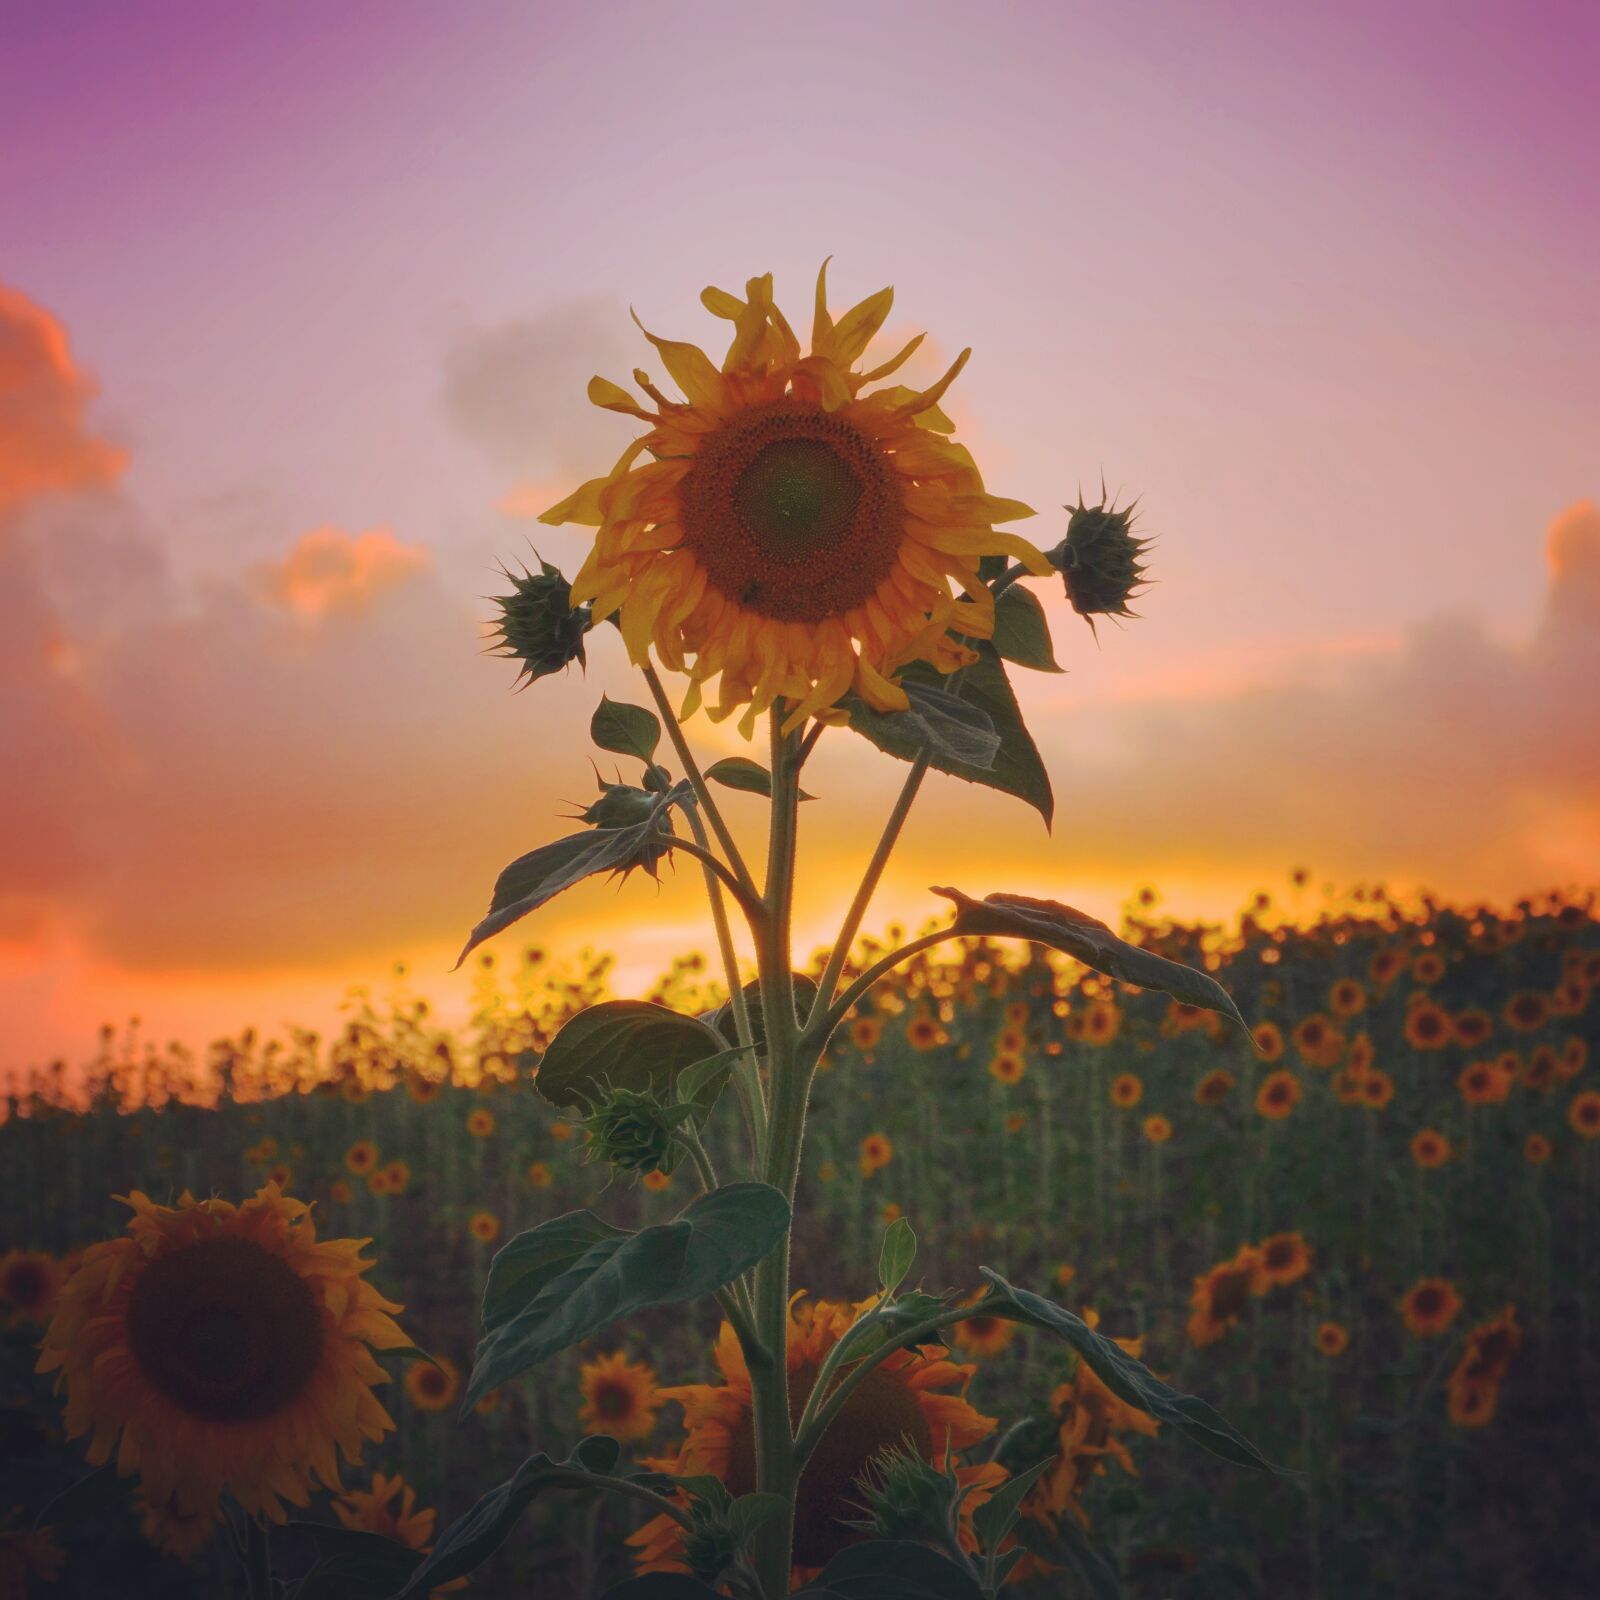 Panasonic Lumix DC-GH5 sample photo. Sunflower, sunset, sunrise photography